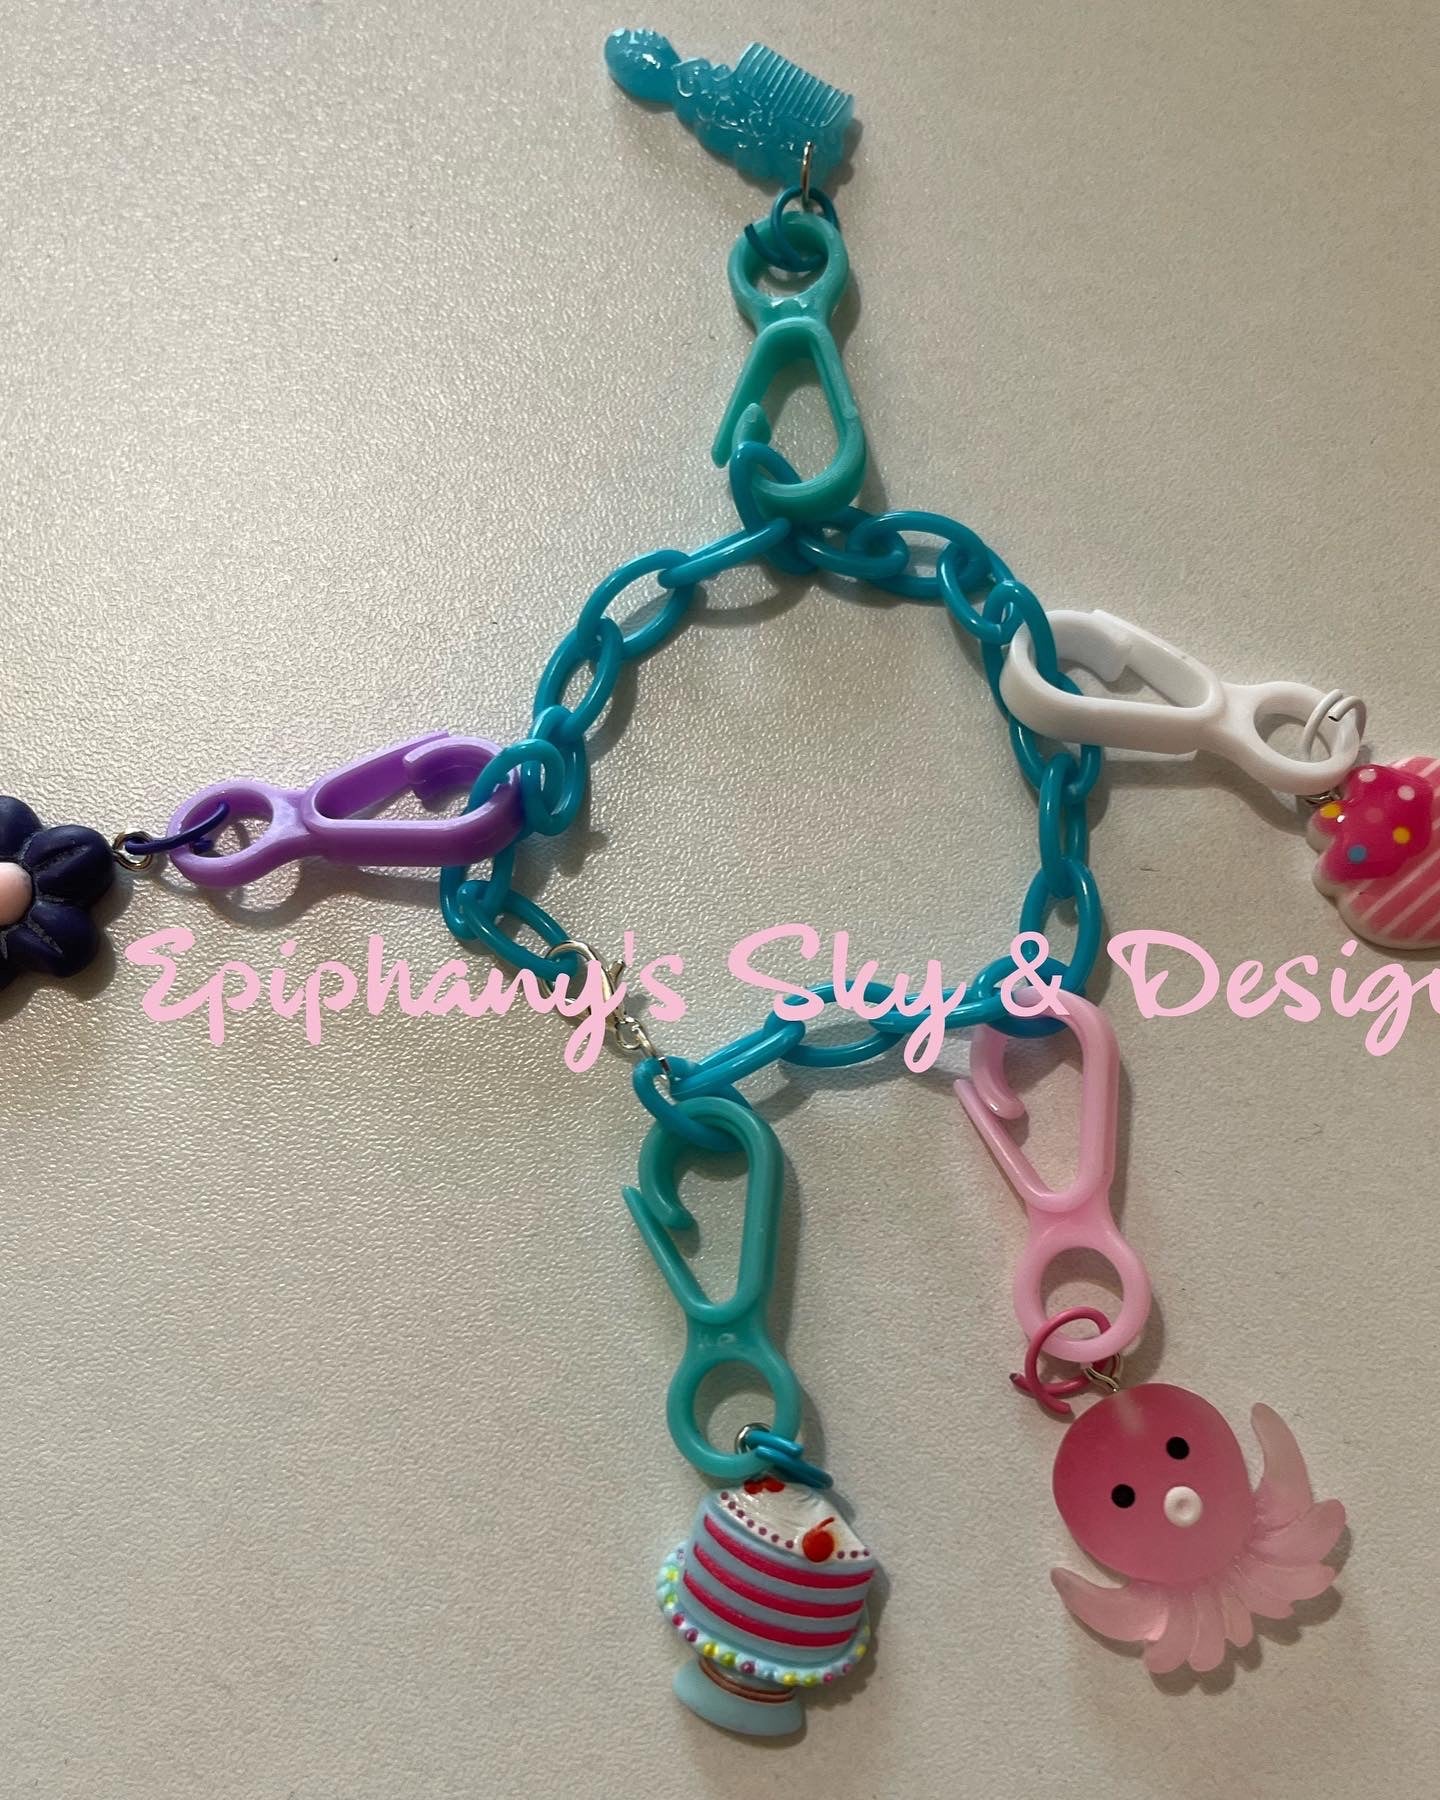 1980s Plastic Charm Bracelets & Necklaces - HubPages